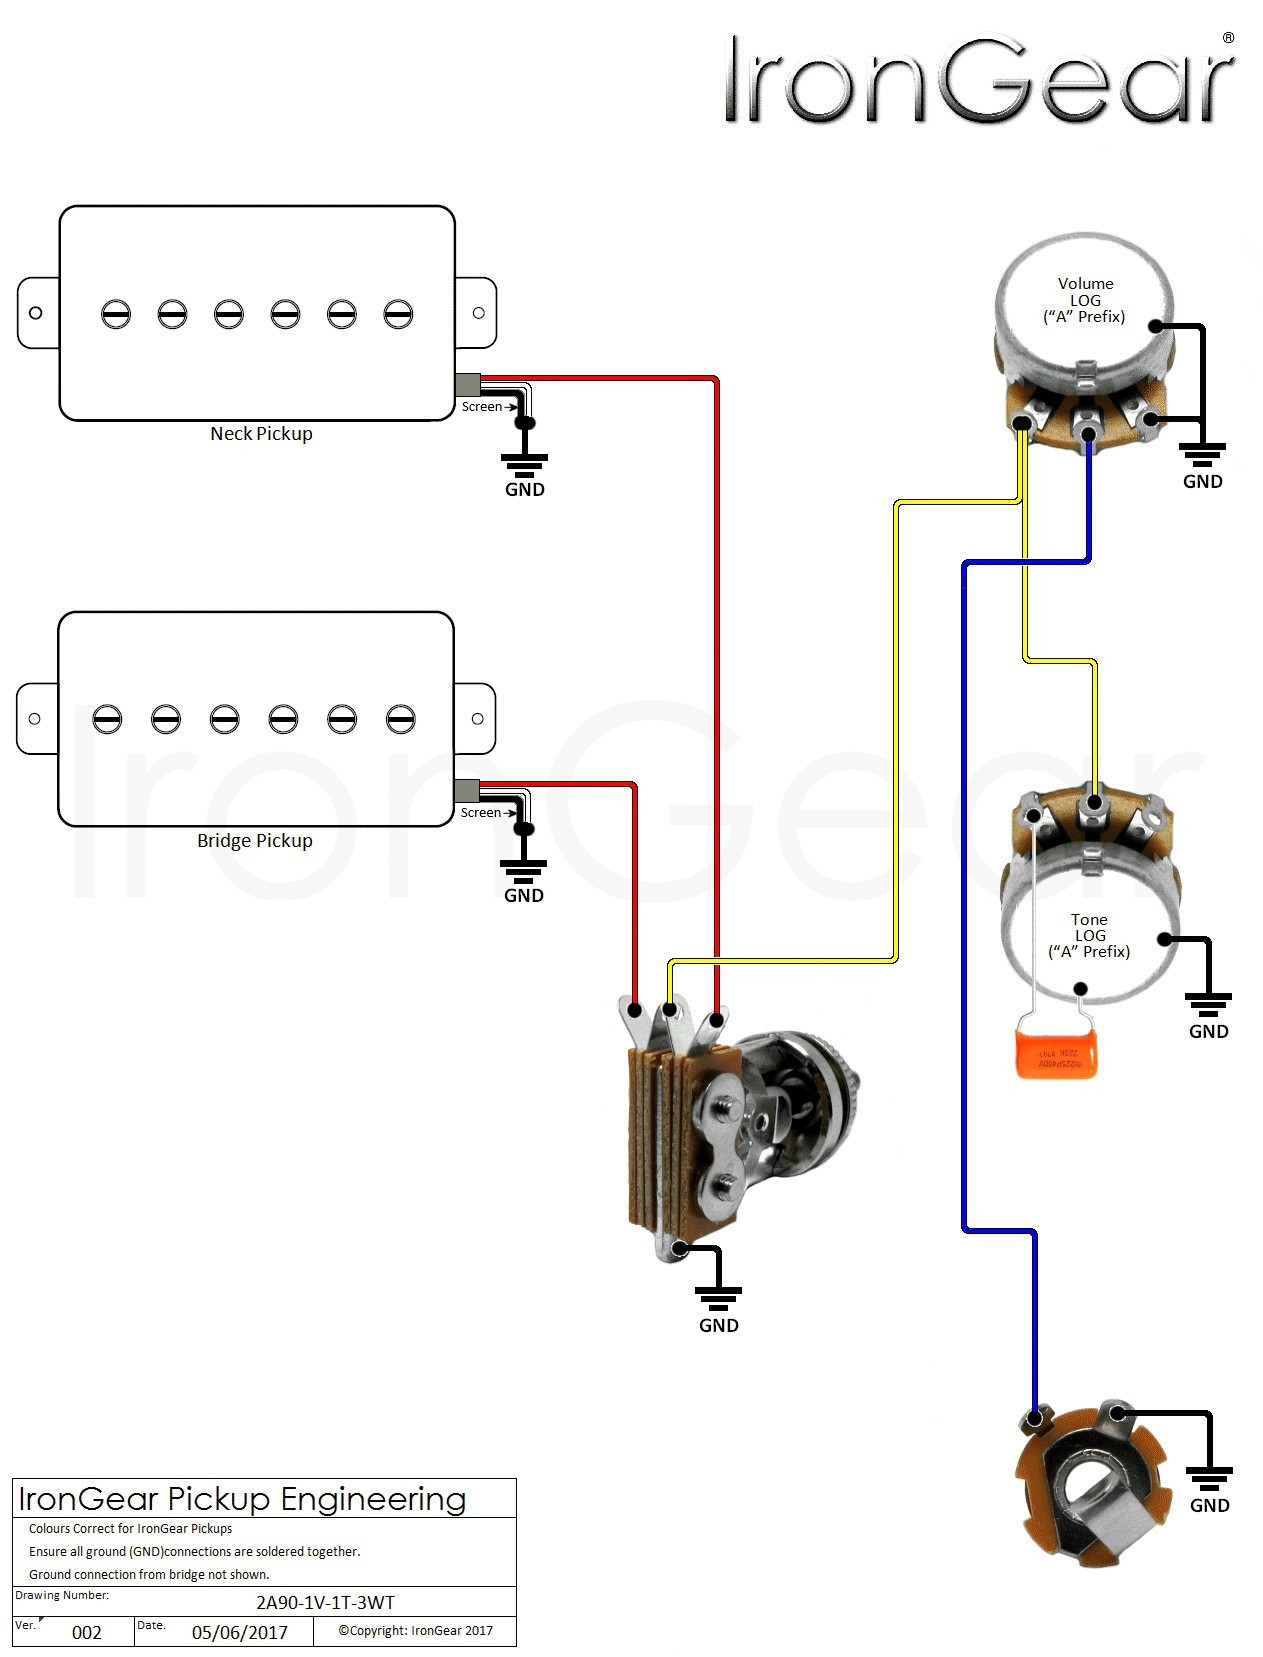 Bass Guitar Wiring Diagram 2 Pickups Inspirational Wiring Diagram Jazz Bass Pickups Inspirationa Active Guitar Wiring